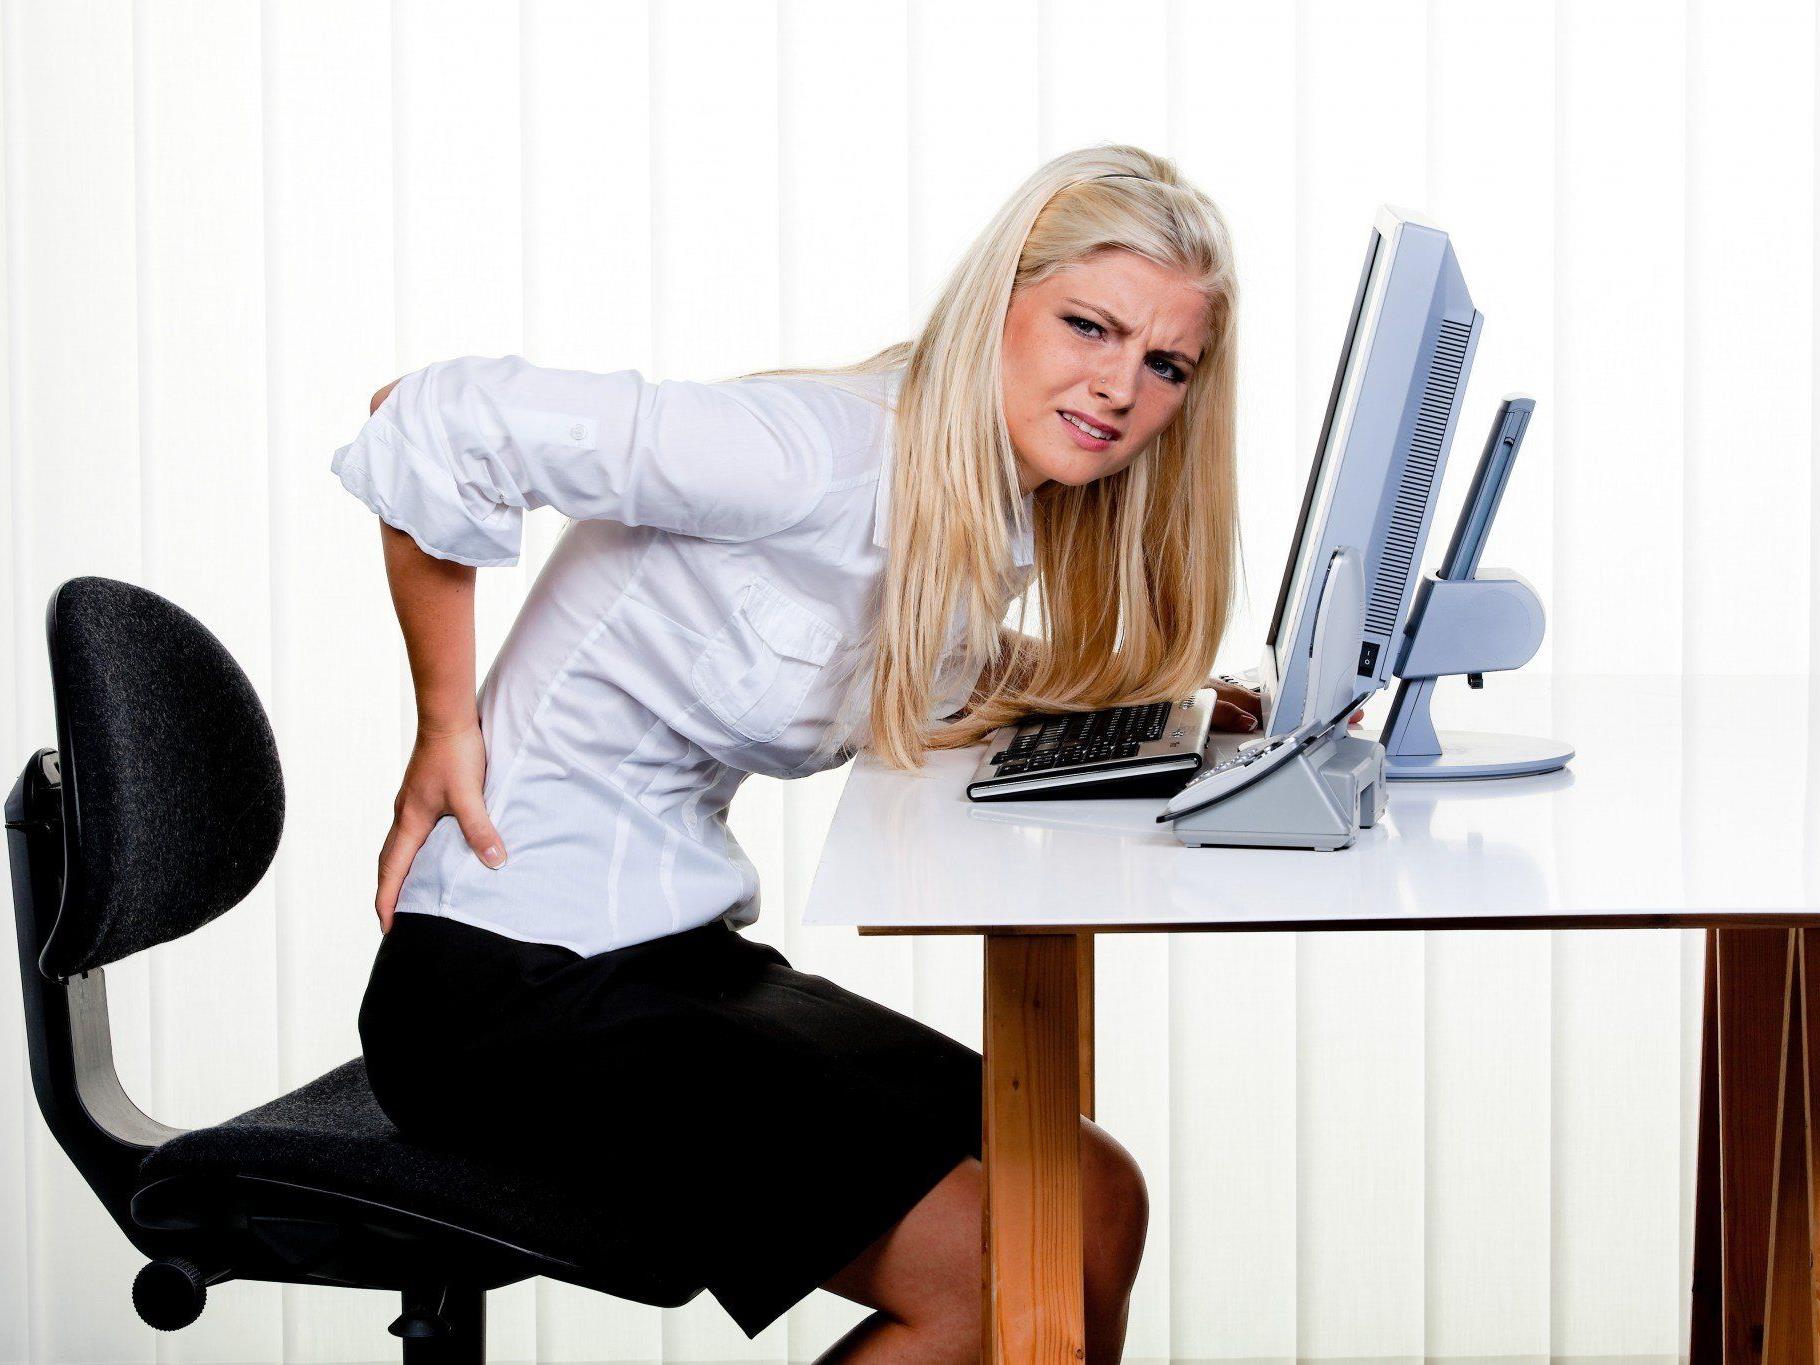 Ein Viertel der Arbeitnehmer klagt über Rückenschmerzen, beinahe noch einmal so viel über Muskelschmerzen